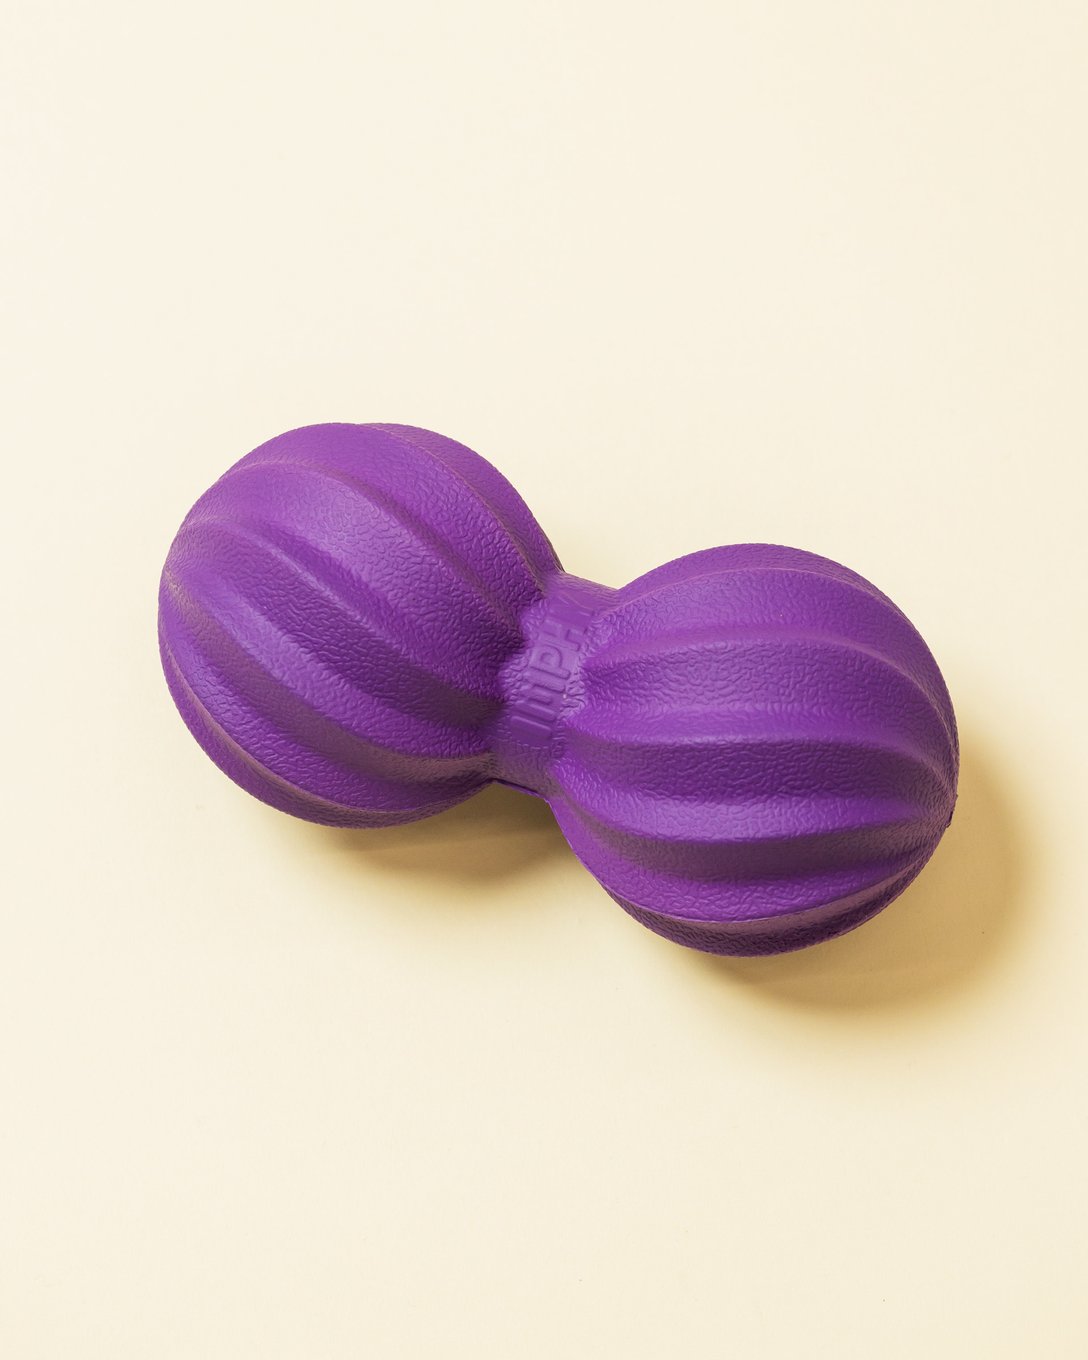 ひょうたんのような形の紫のマッサージボール